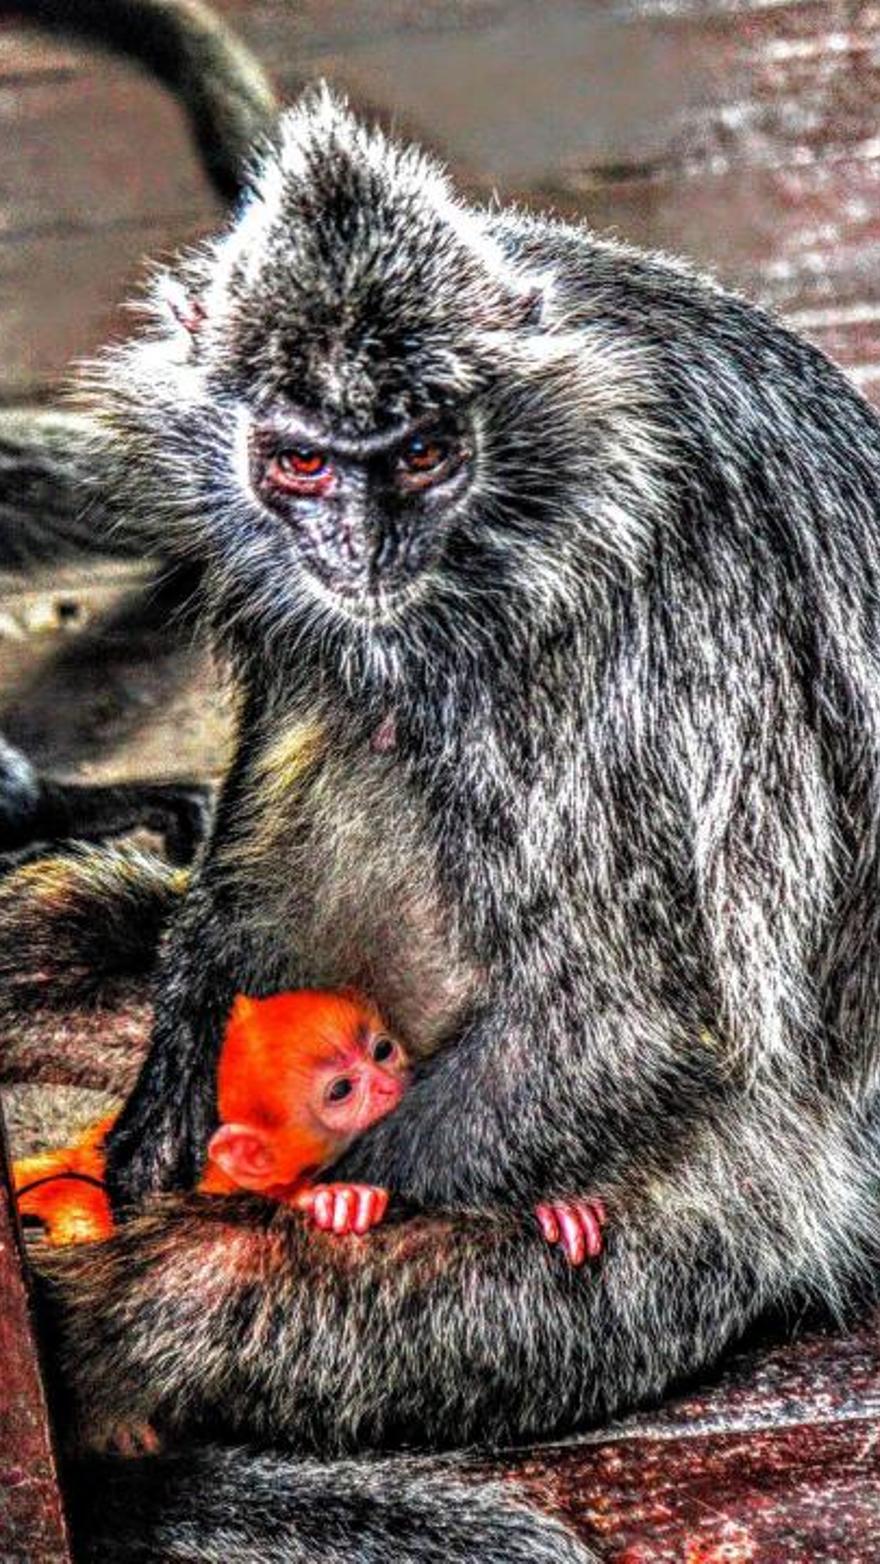 Los monos narigudos con narices más grandes tienen una vida sexual mejor